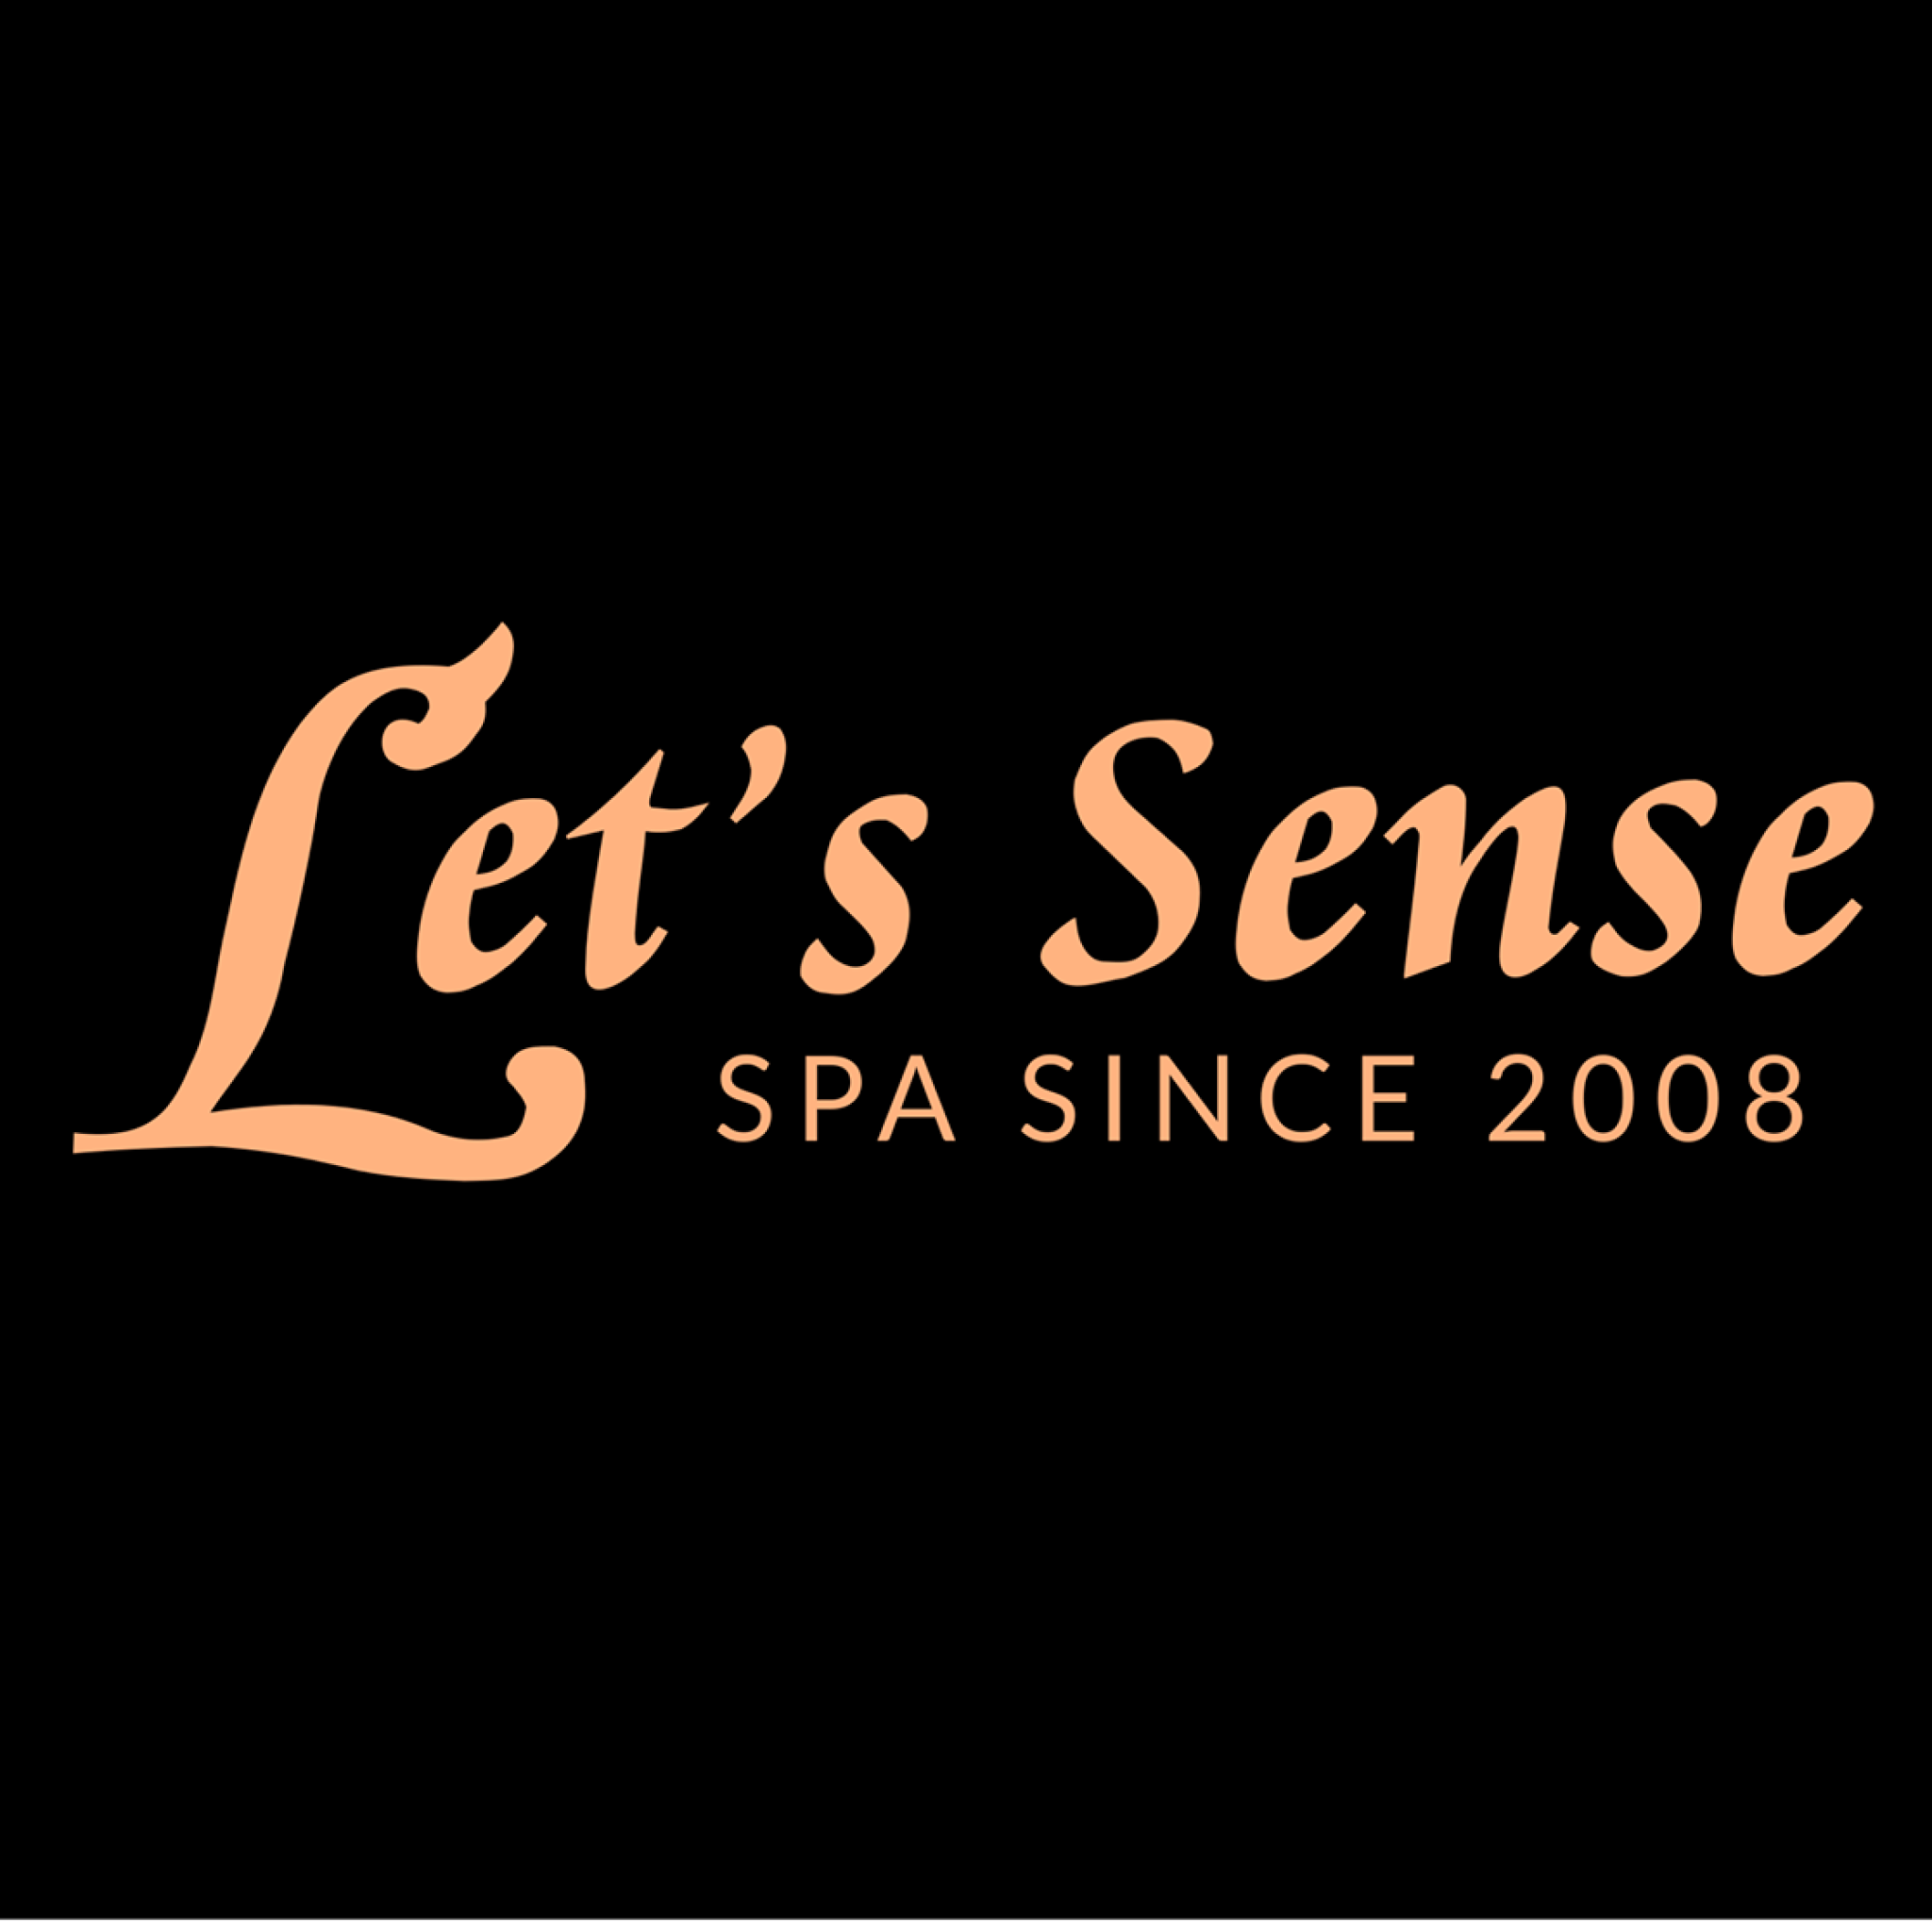 Let's Sense Spa